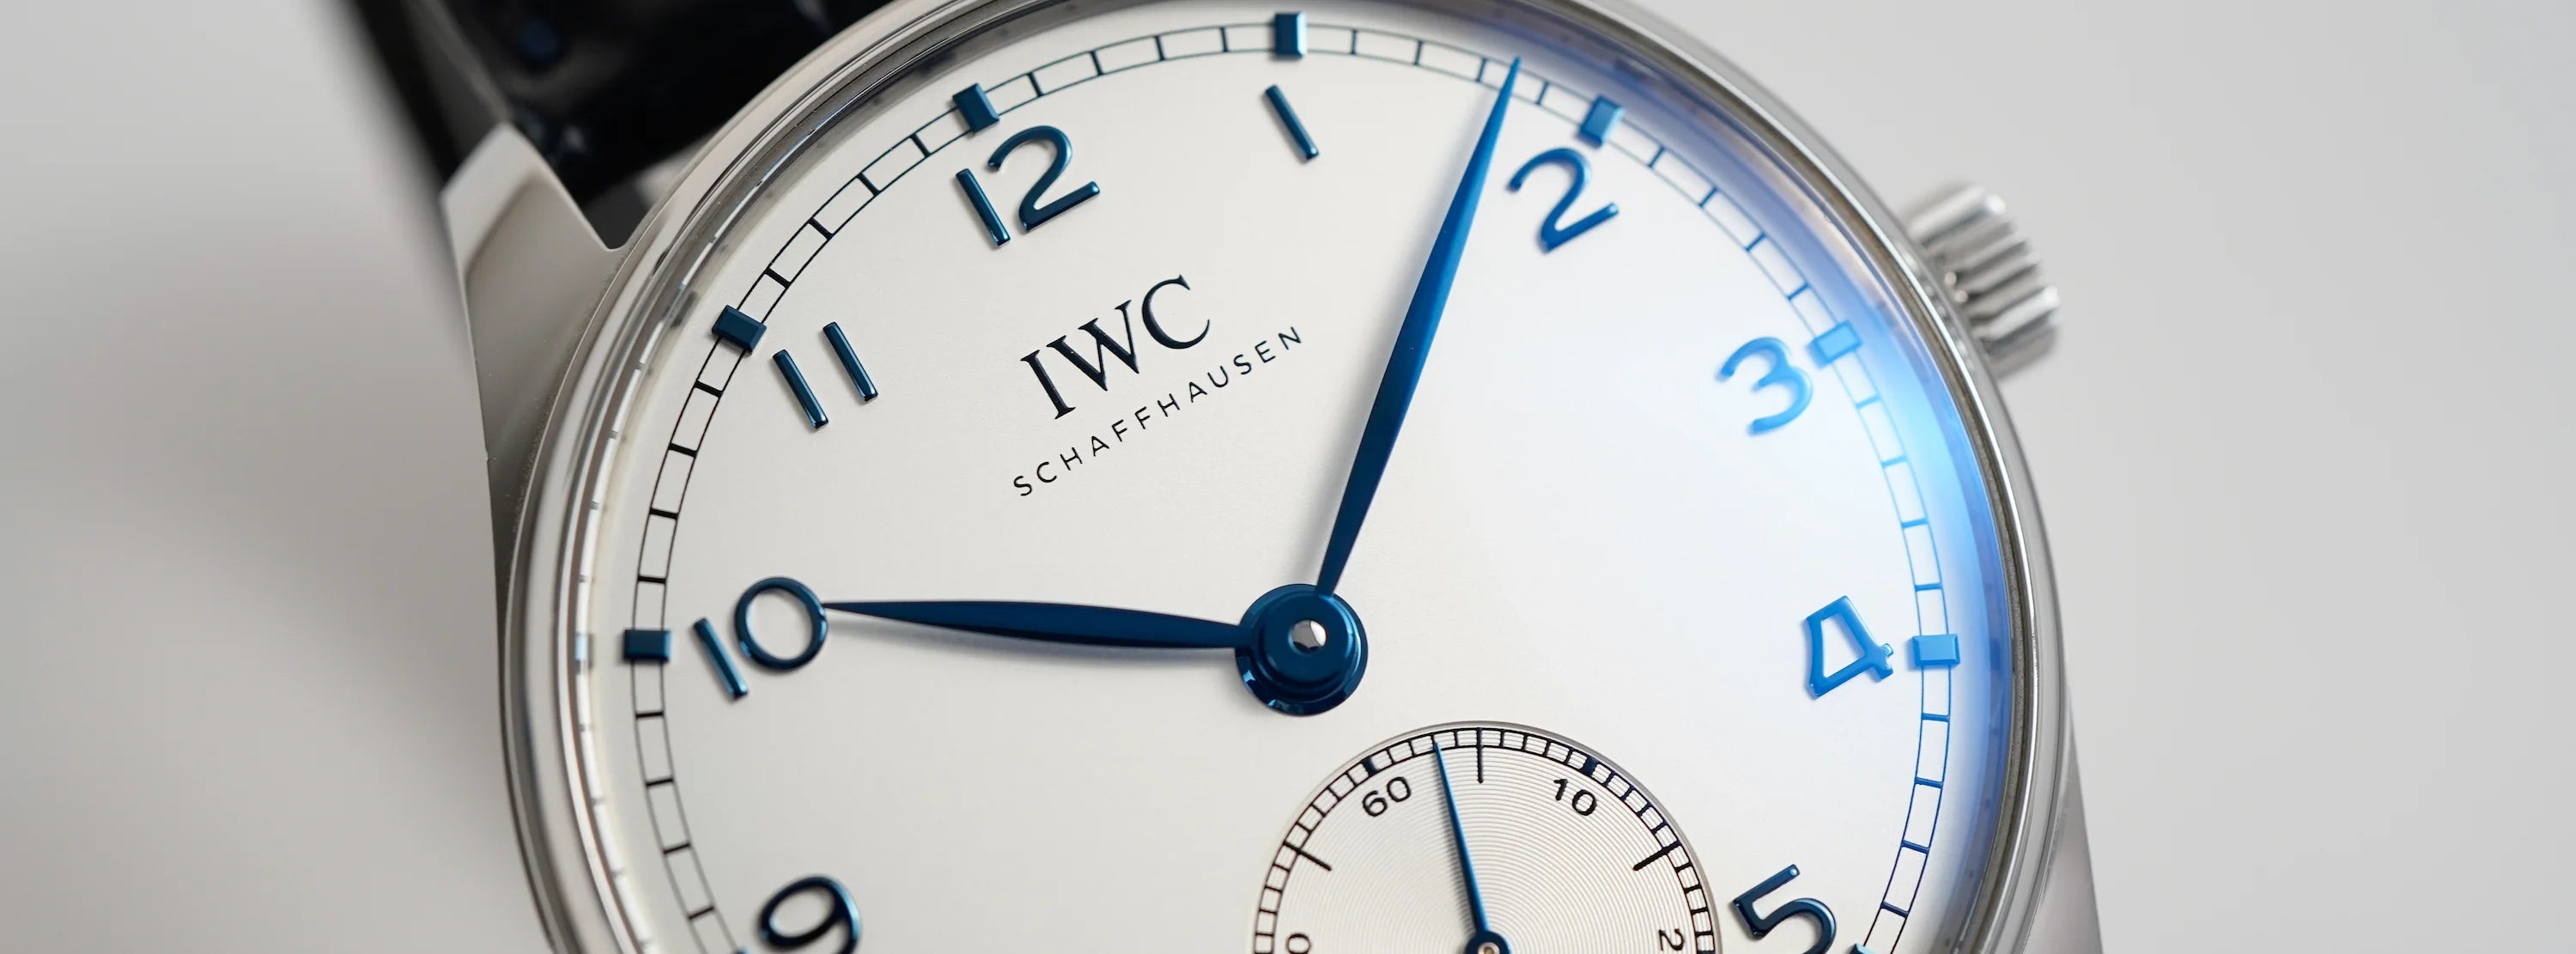 Uhr von IWC Schaffhausen (International Watch Company) mit weissem Zifferblatt und blauen Zeigern/Indizes mit Edelstahlgehäuse